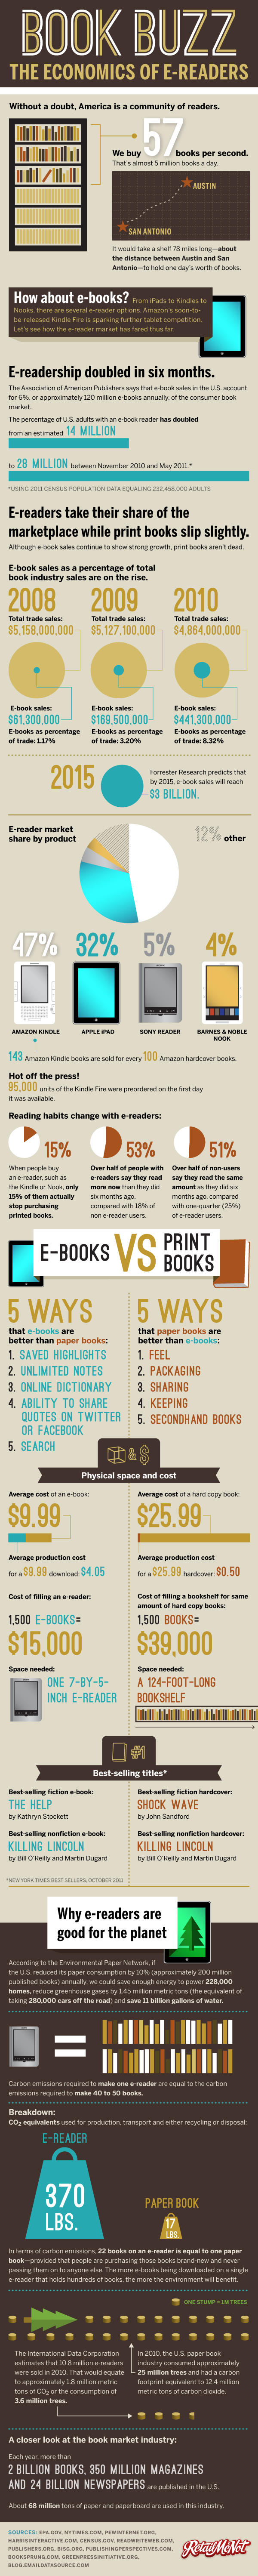 E-Reader vs. Print Books 2